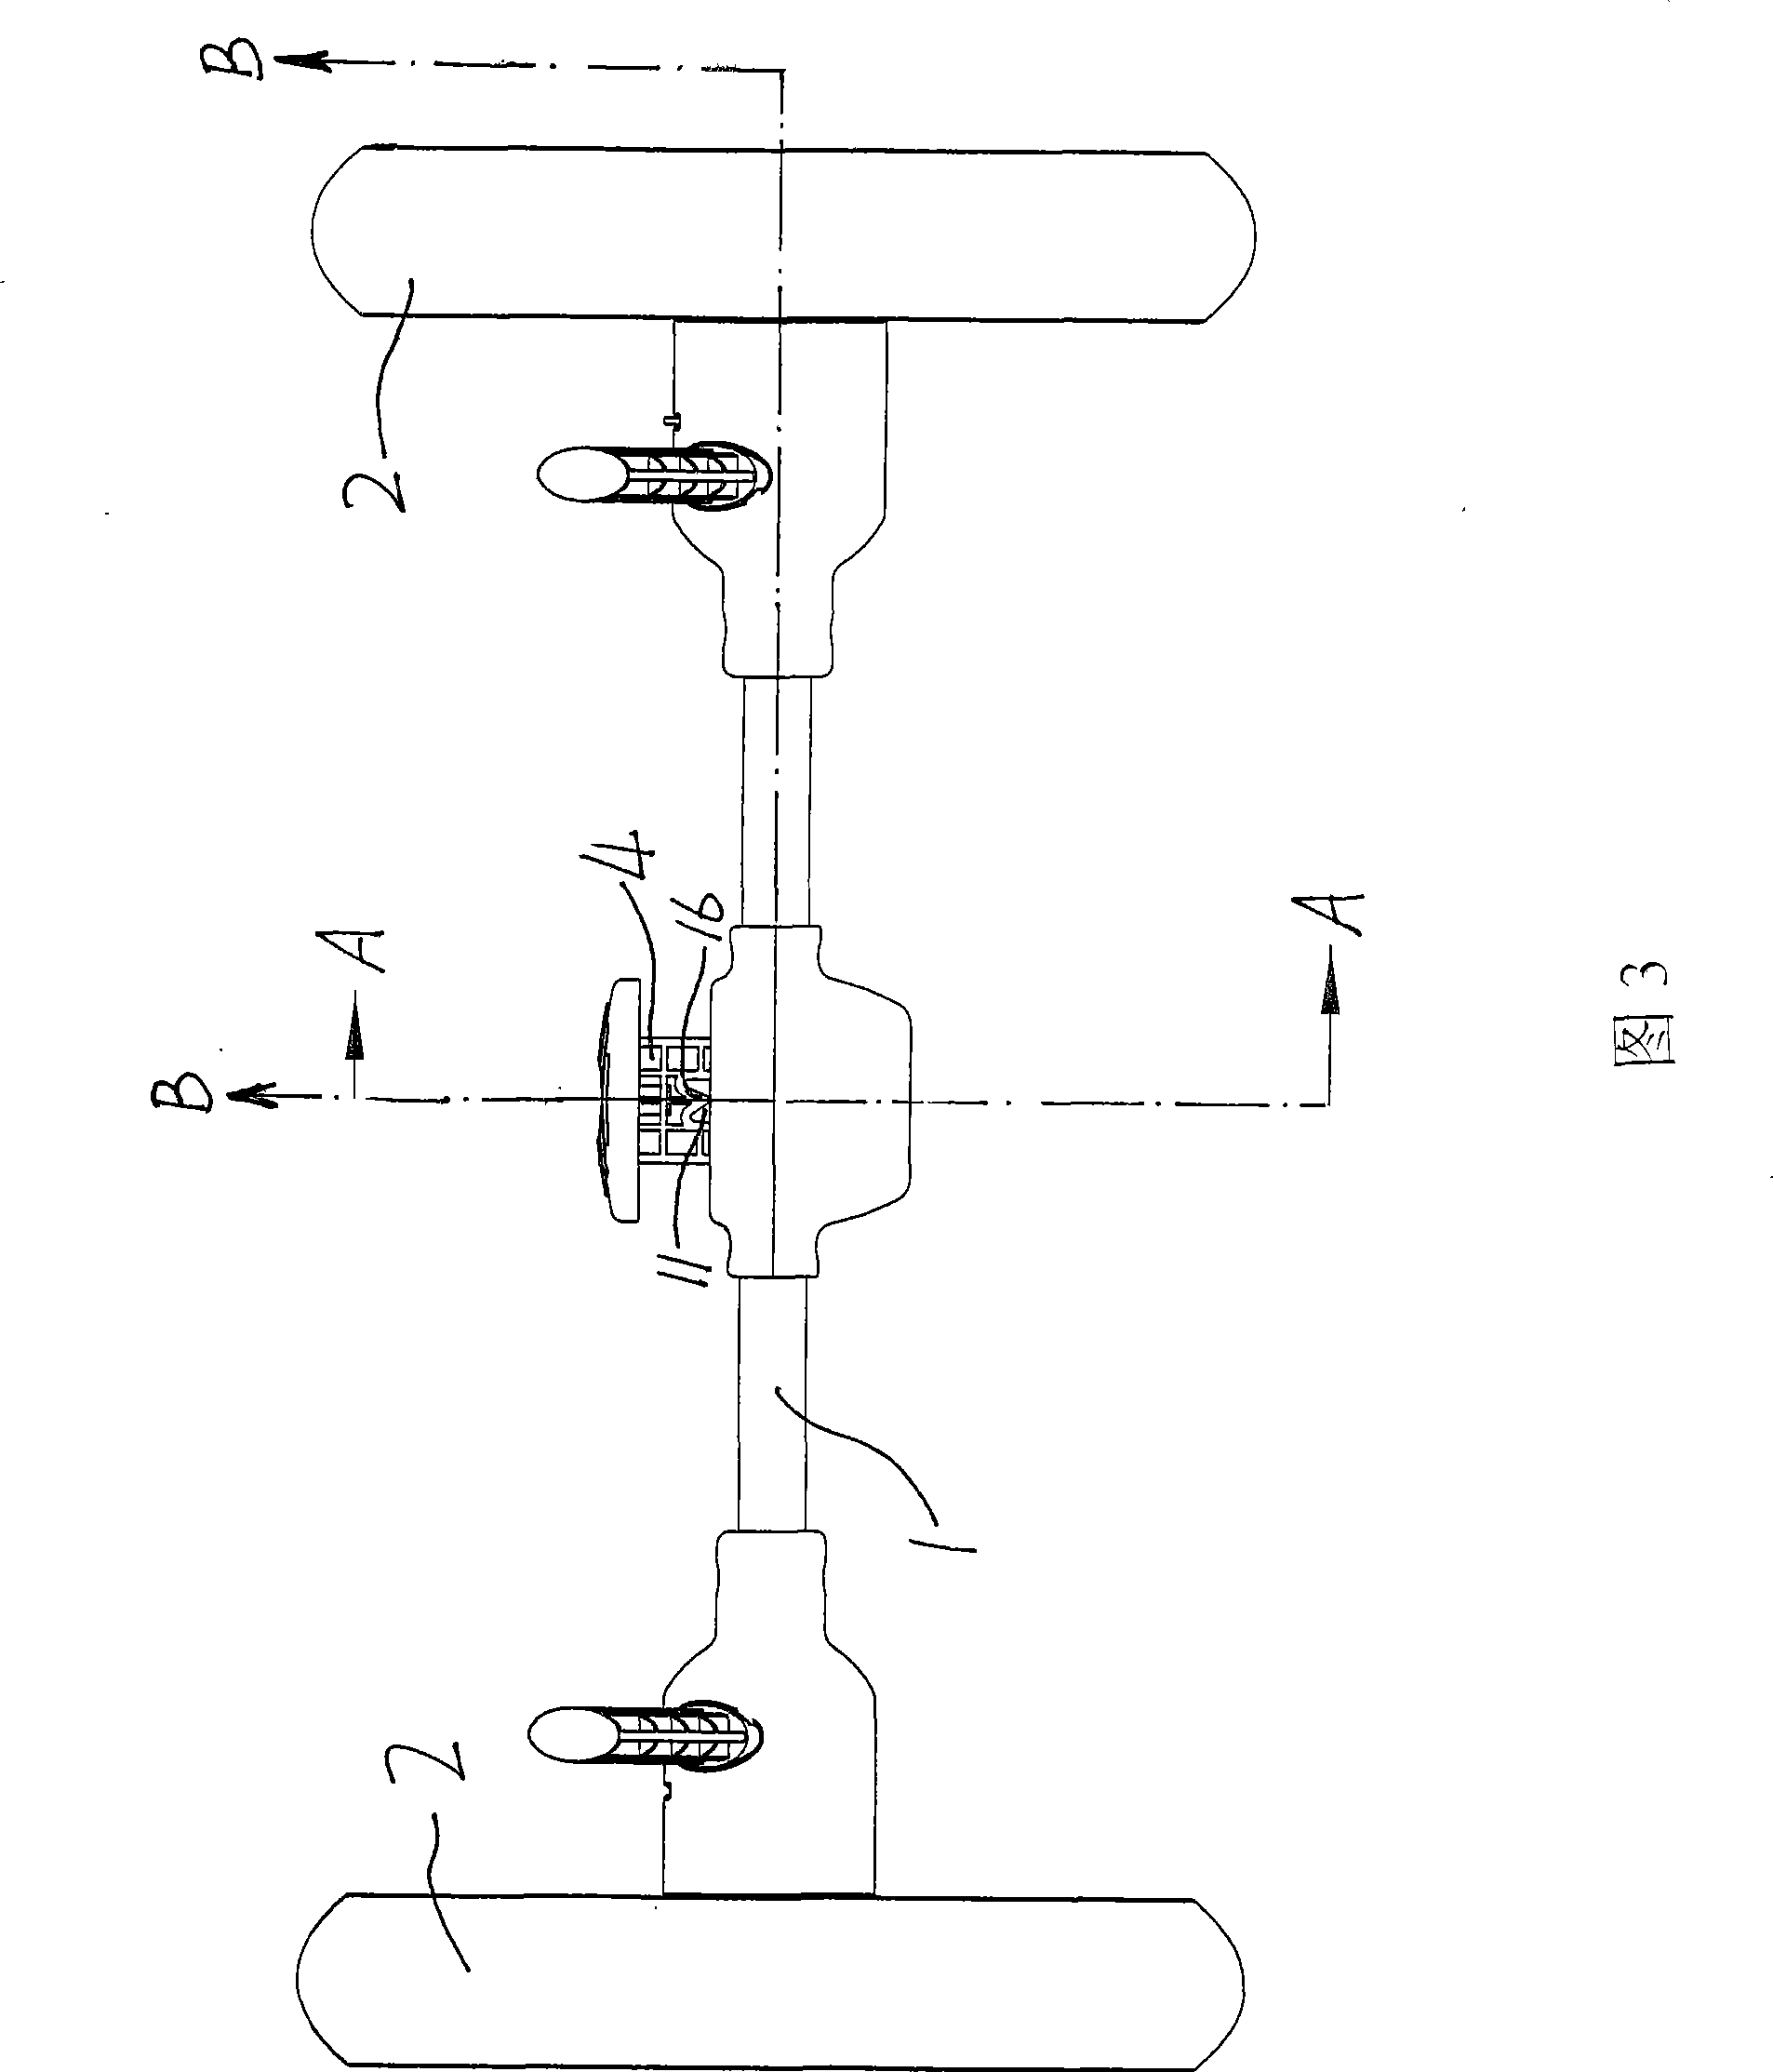 Brake mechanism for perambulator